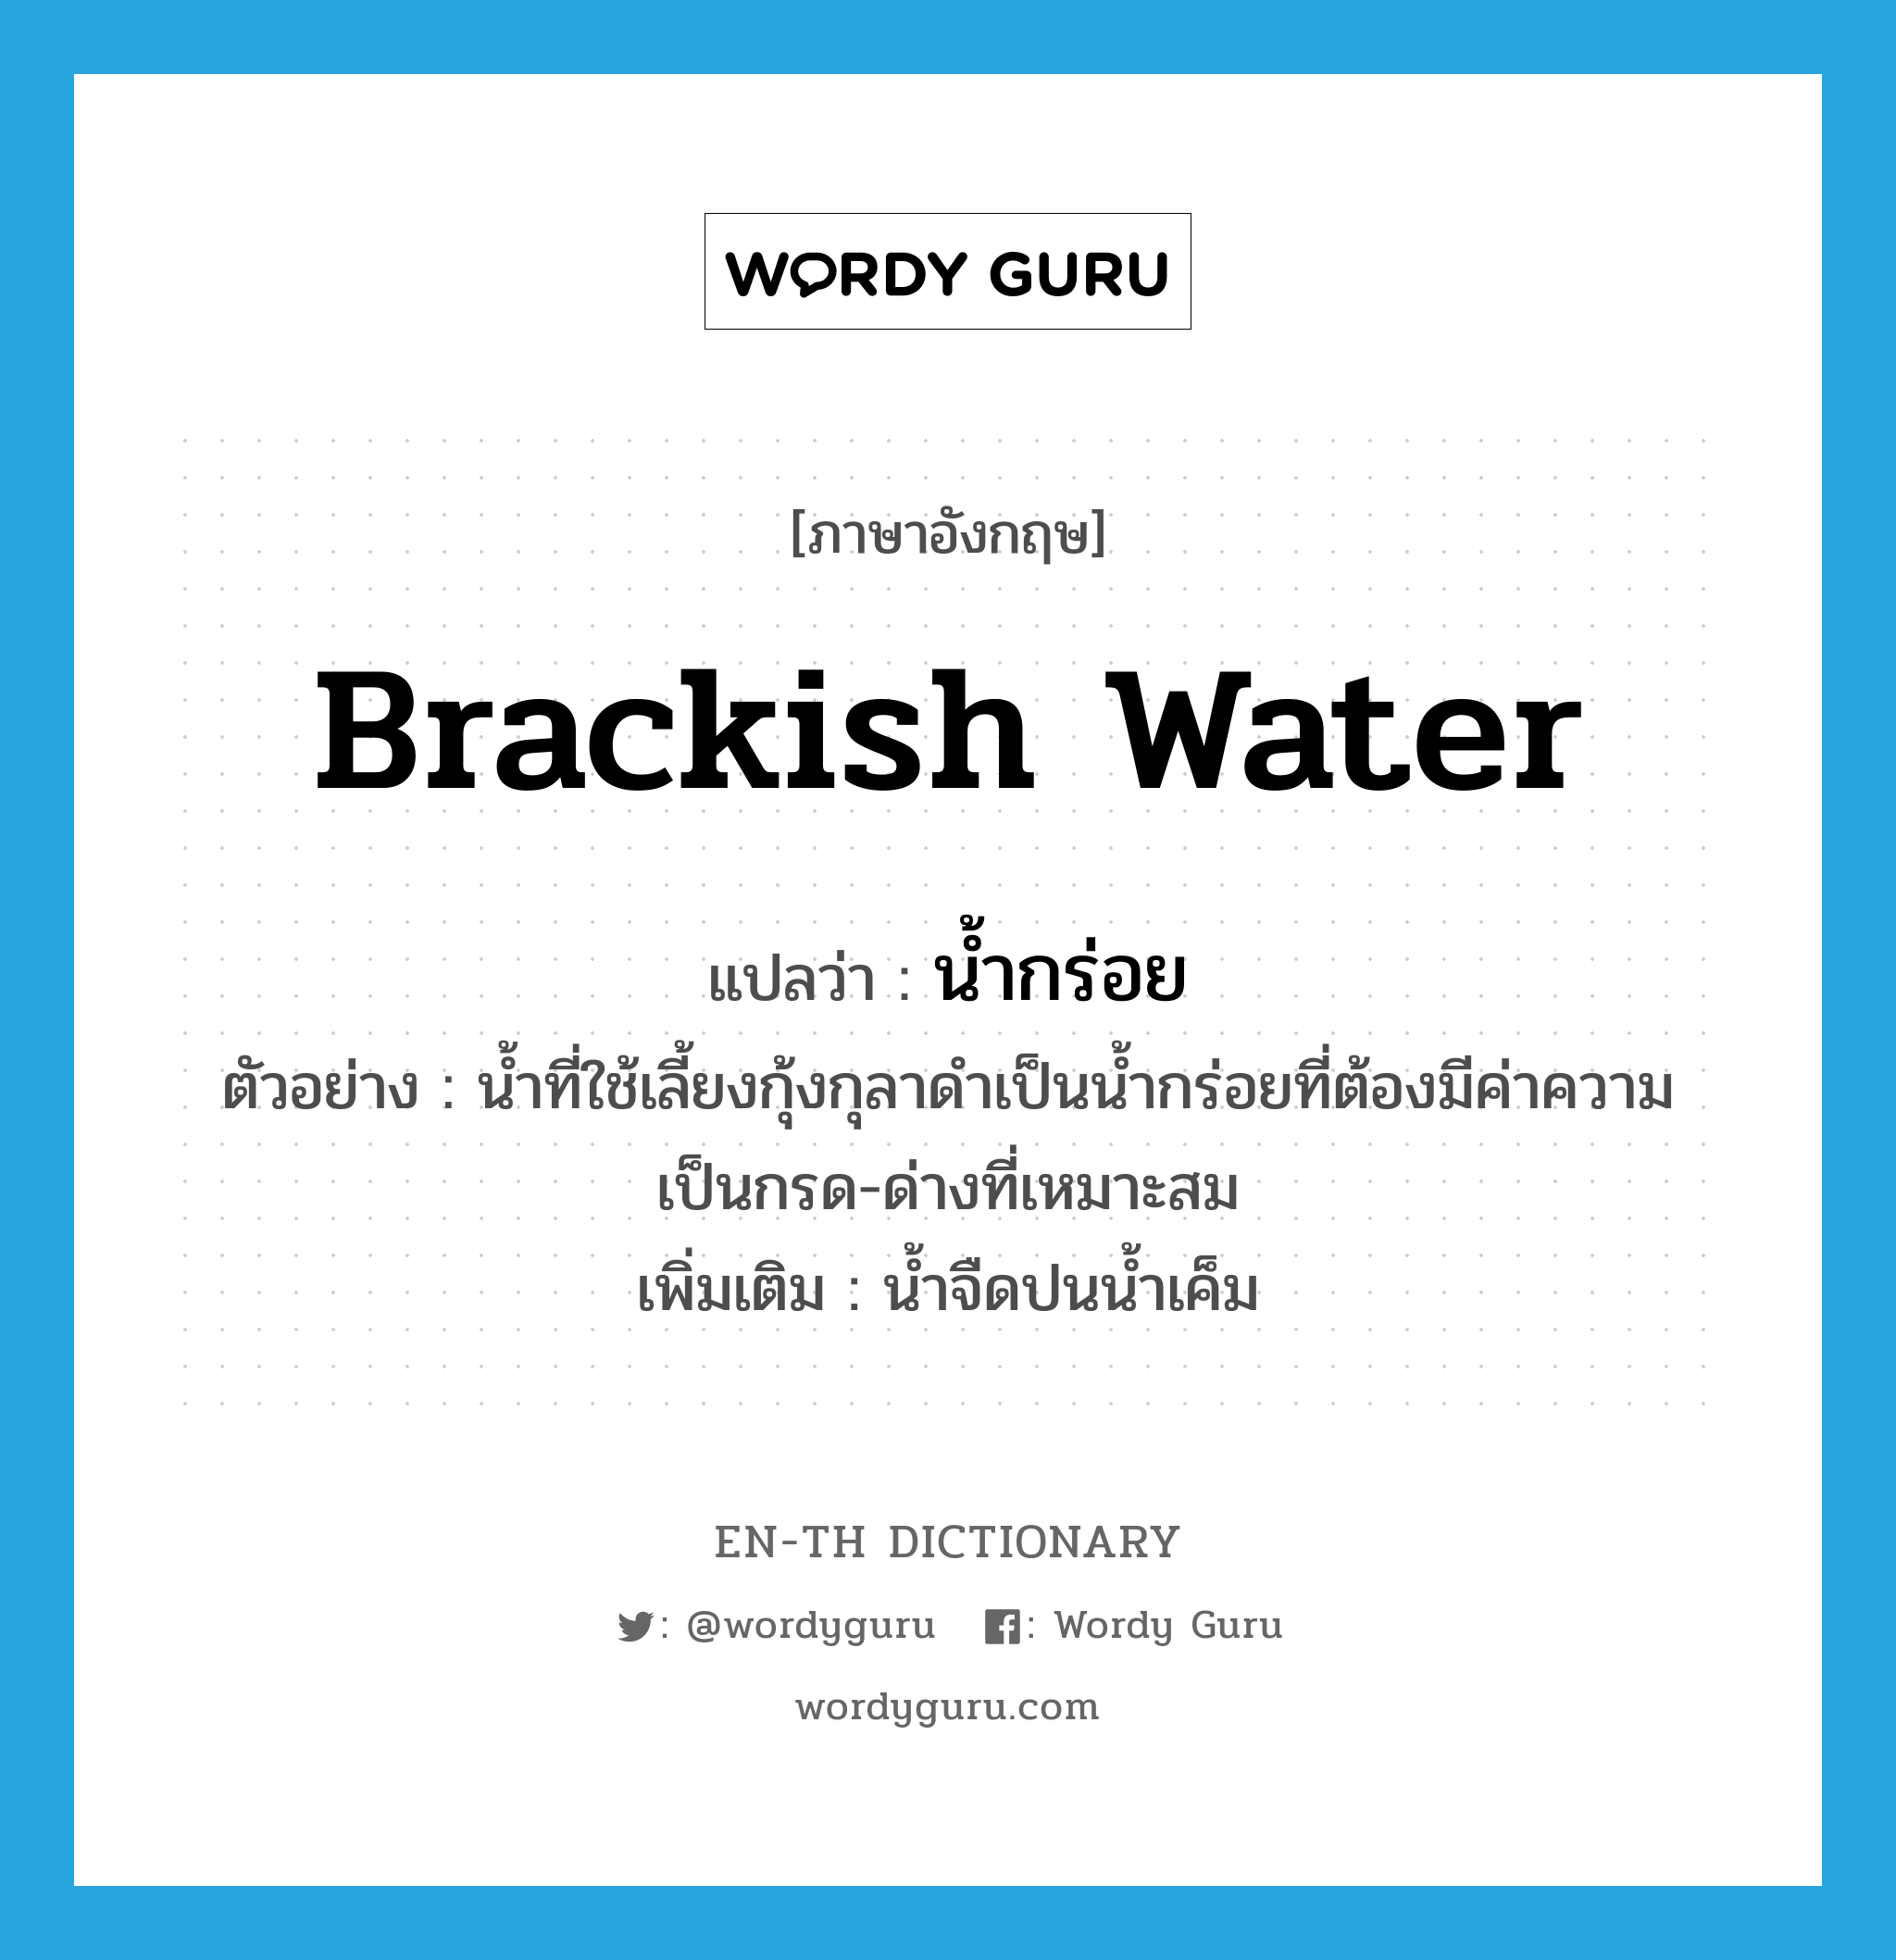 brackish water แปลว่า?, คำศัพท์ภาษาอังกฤษ brackish water แปลว่า น้ำกร่อย ประเภท N ตัวอย่าง น้ำที่ใช้เลี้ยงกุ้งกุลาดำเป็นน้ำกร่อยที่ต้องมีค่าความเป็นกรด-ด่างที่เหมาะสม เพิ่มเติม น้ำจืดปนน้ำเค็ม หมวด N